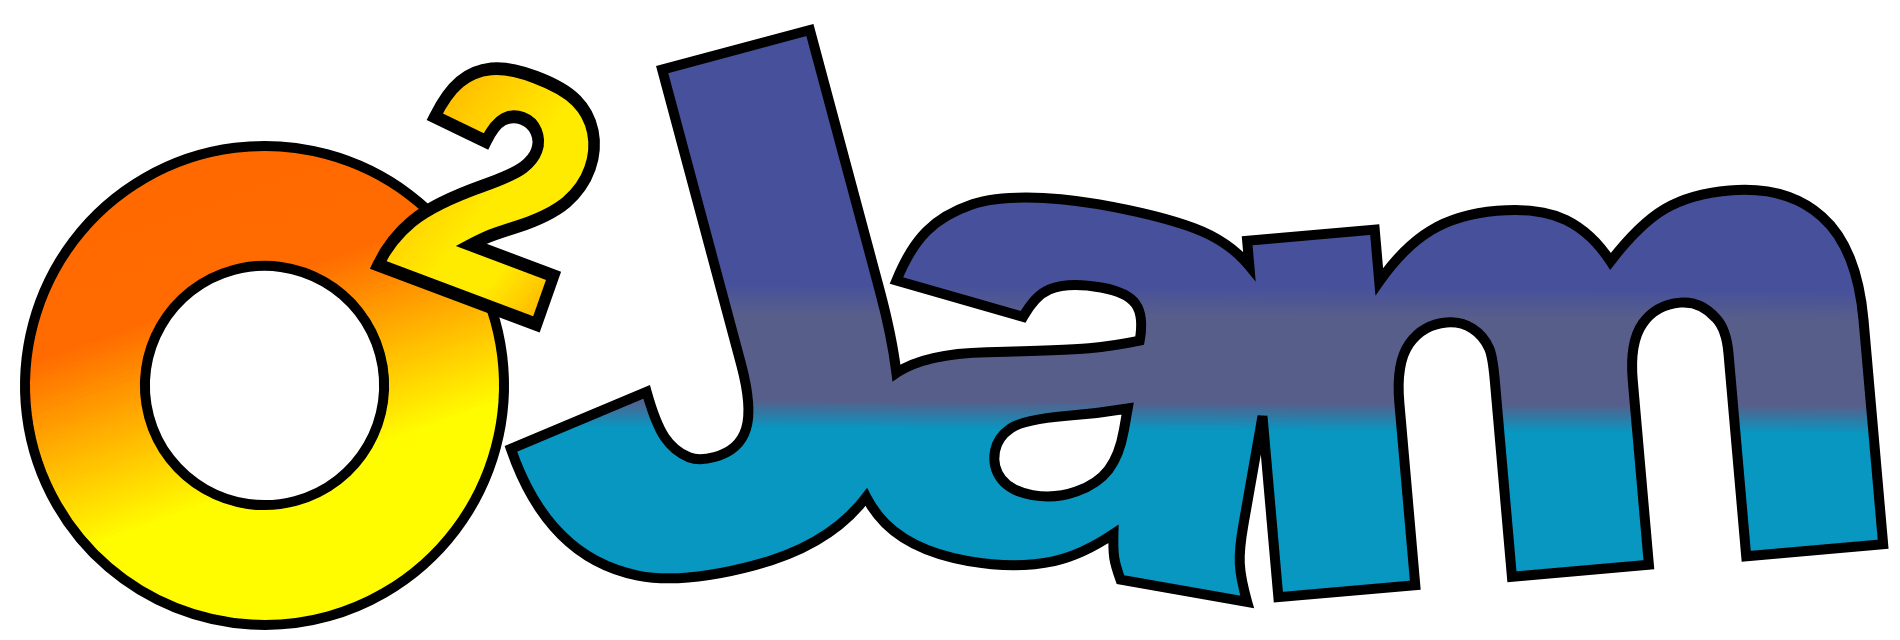 O2Jam logo